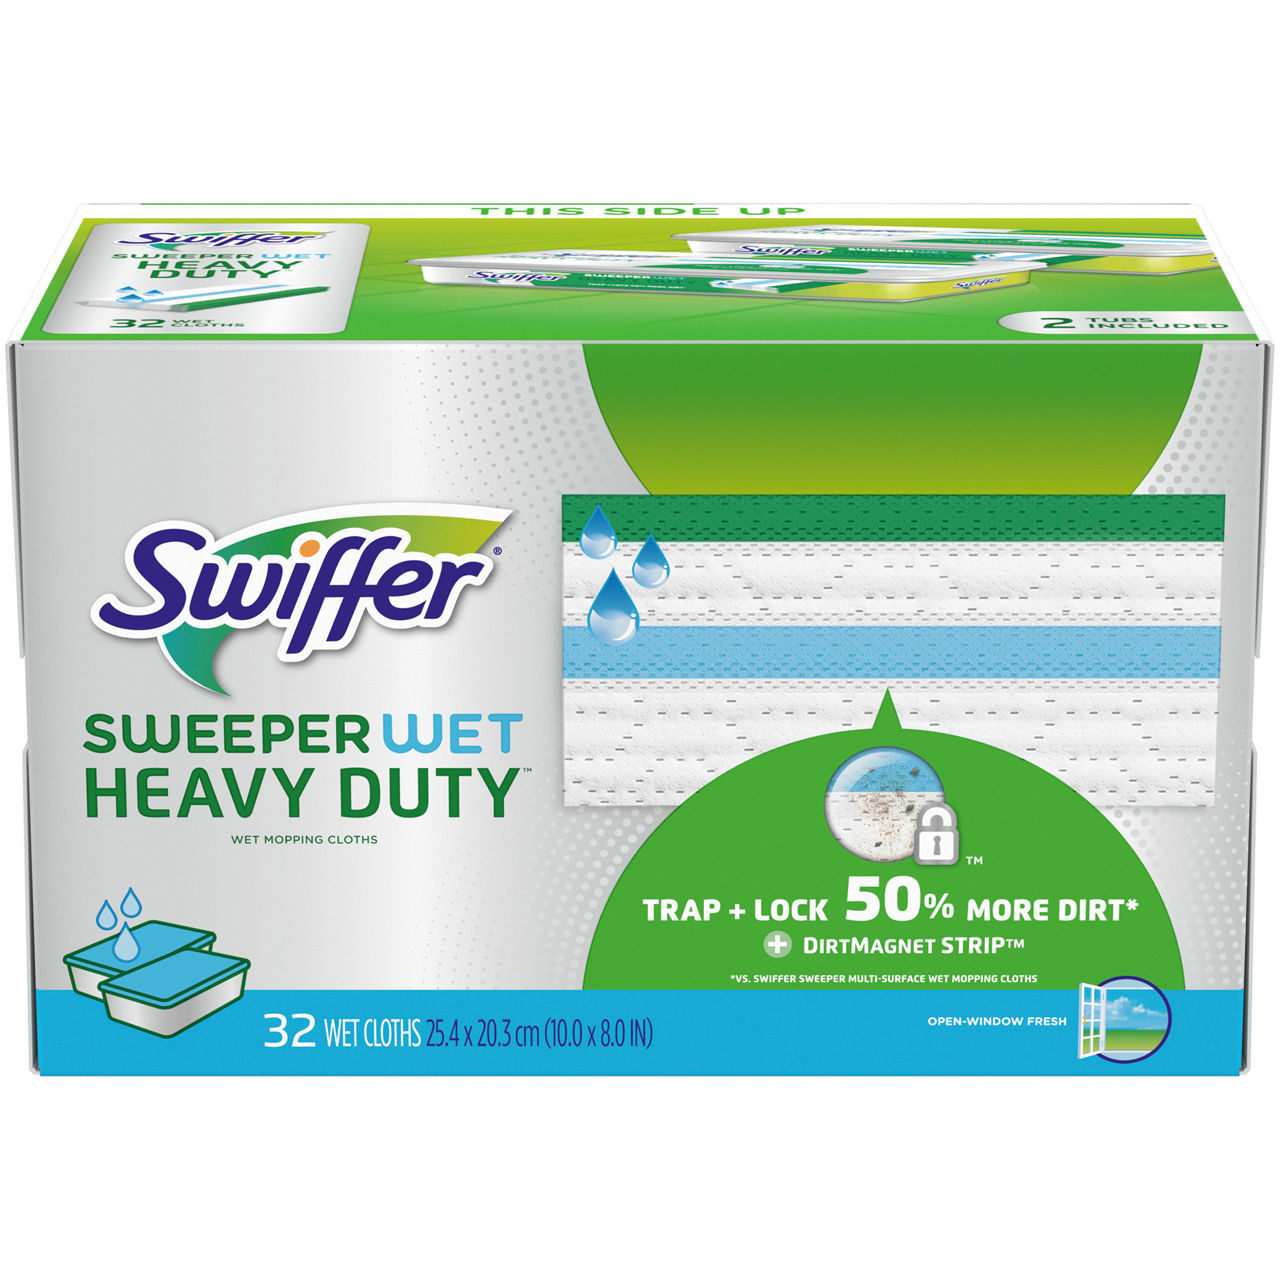 Swiffer Heavy Duty (50 Count)